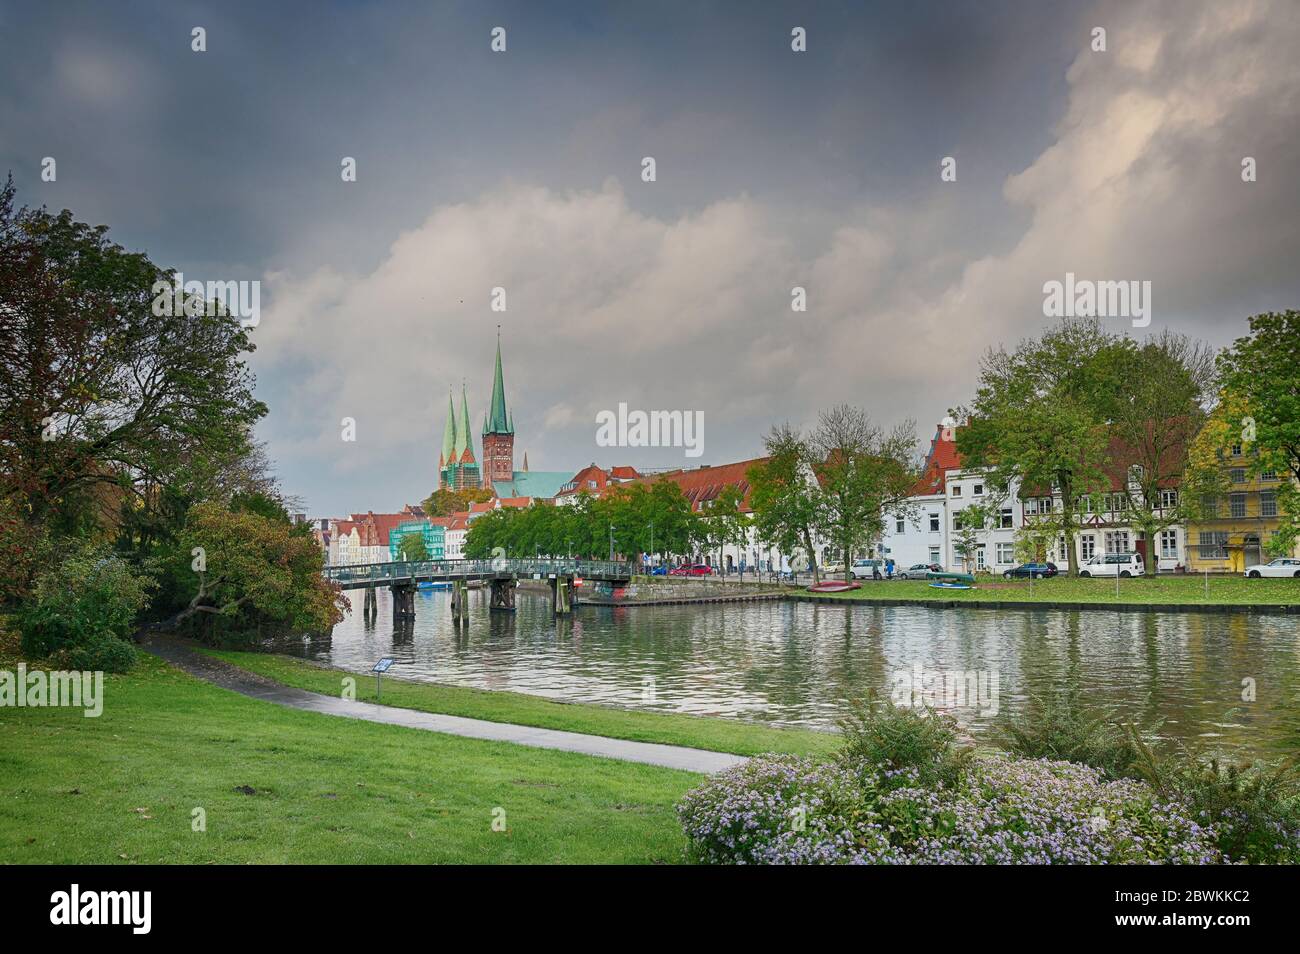 Paysage urbain de la vieille ville historique de Luebeck, Allemagne, au bord de la rivière Trave, ciel spectaculaire avec nuages, espace de copie Banque D'Images